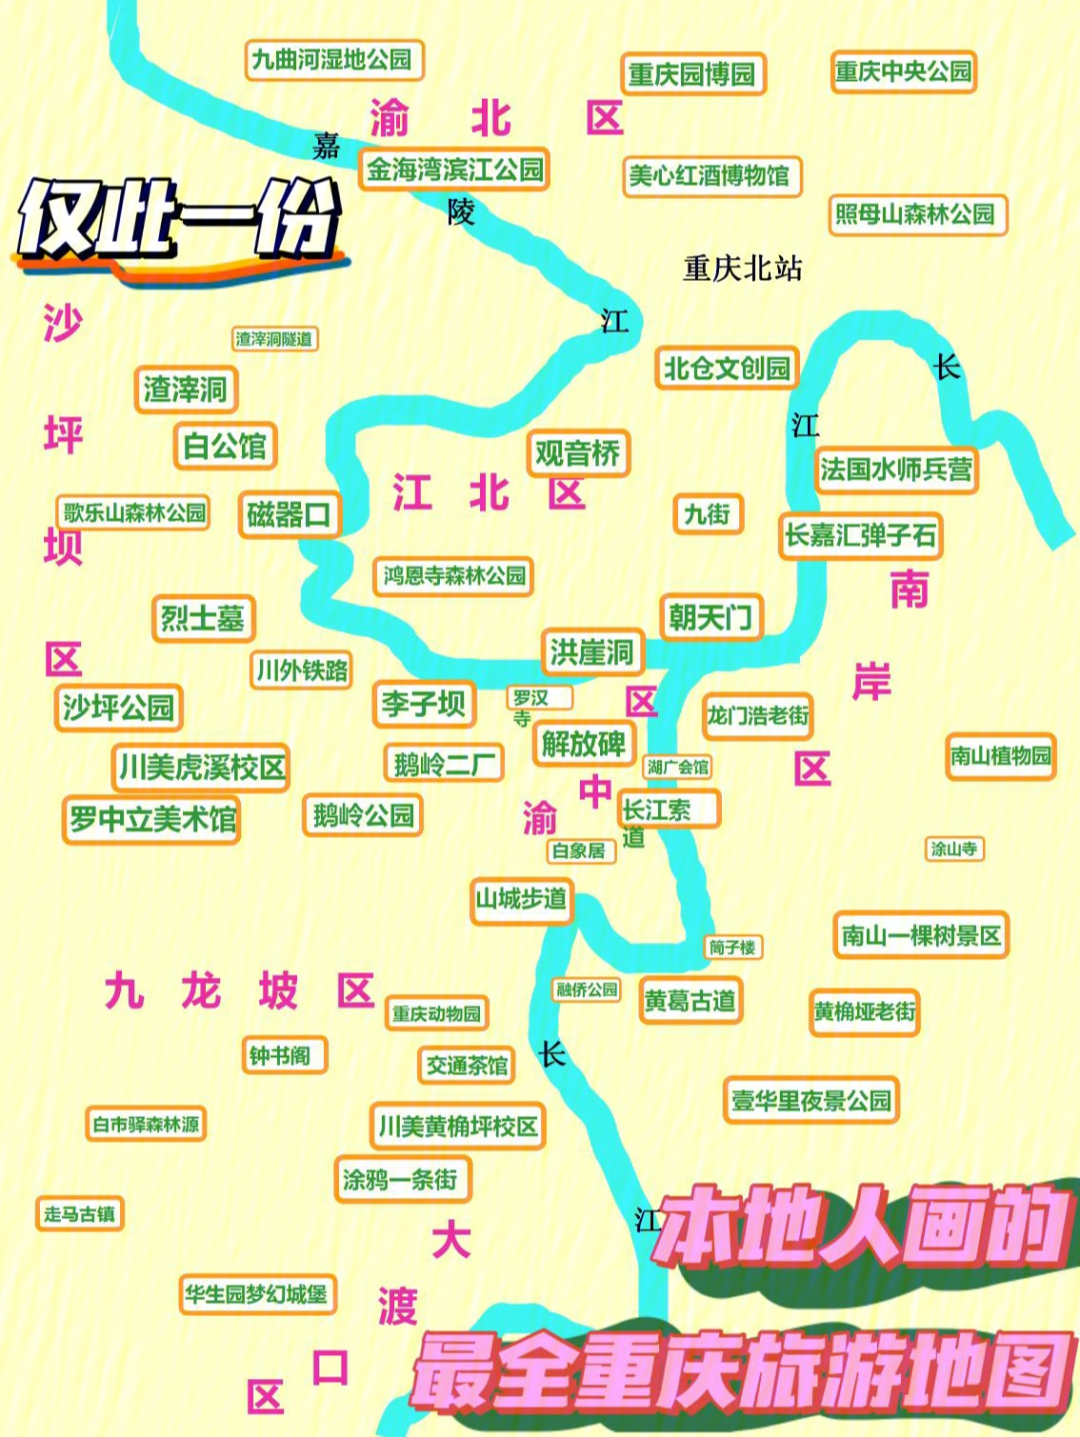 重庆本地人画的旅游景点图全网仅此一份